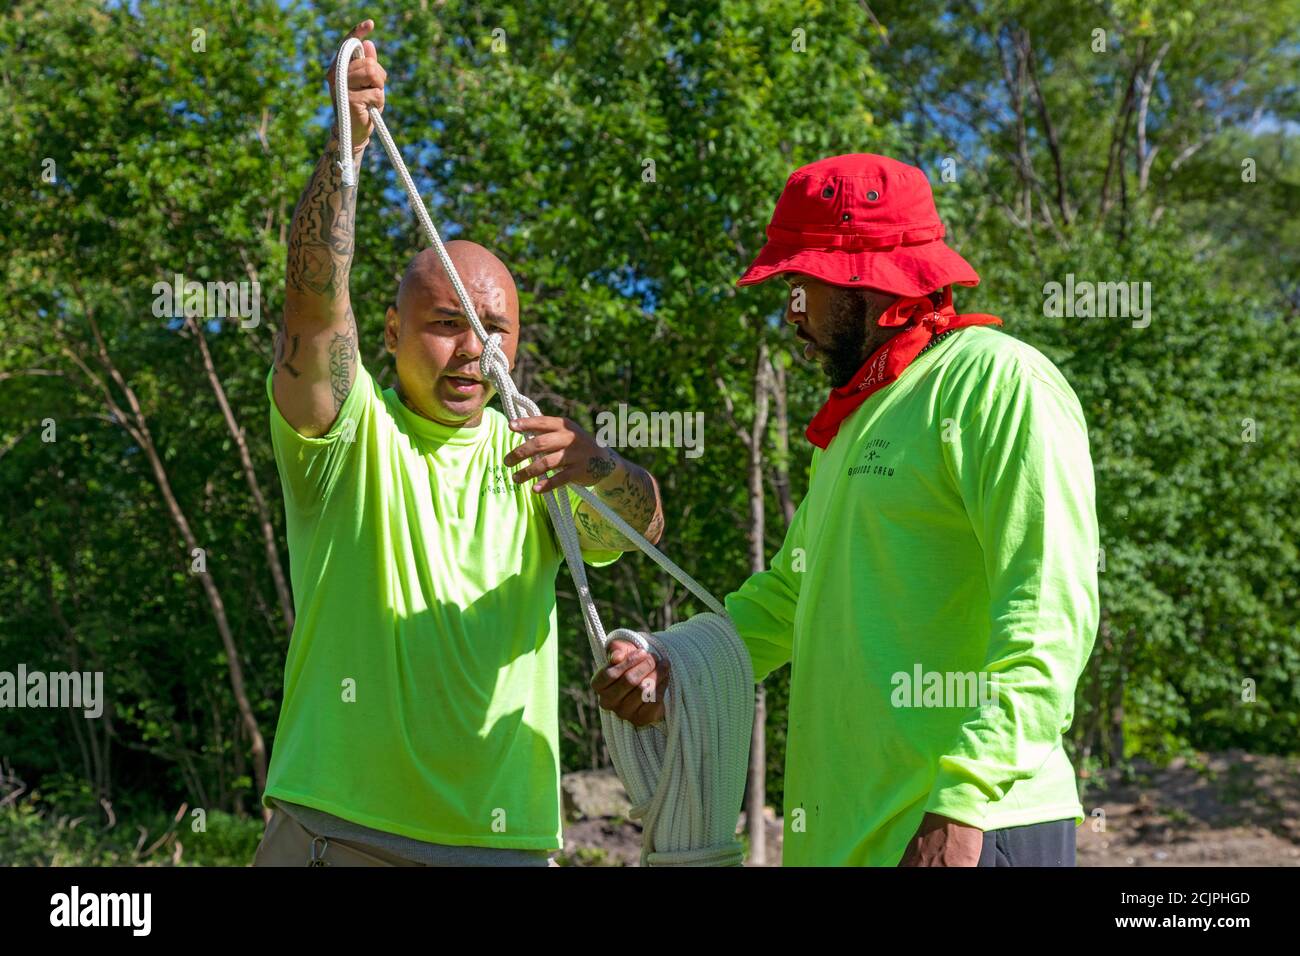 Detroit, Michigan - Arbeiter der Detroit Grounds Crew lernen, wie man die Seile benutzt, die sie brauchen, um tote oder unerwünschte Bäume abzureißen. Stockfoto